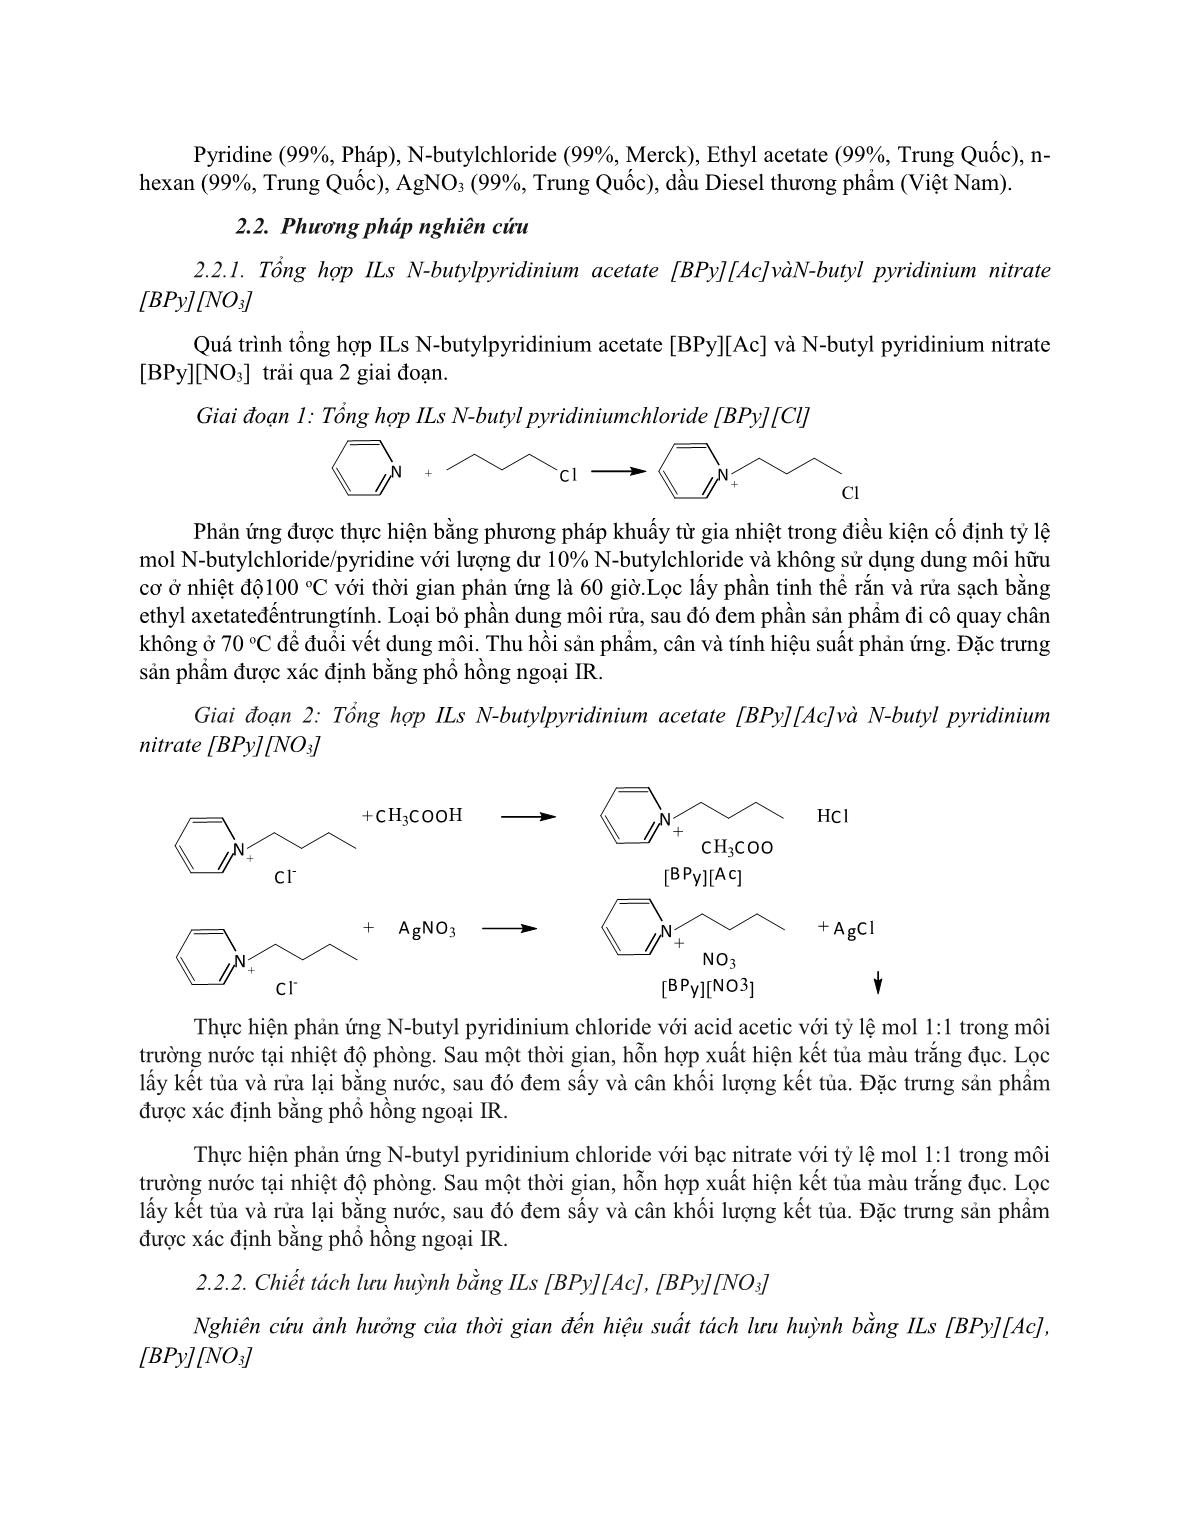 Nghiên cứu tổng hợp chất lỏng ion họ Pyridinium và ứng dụng chiết tách lưu huỳnh từ dầu Diesel trang 2